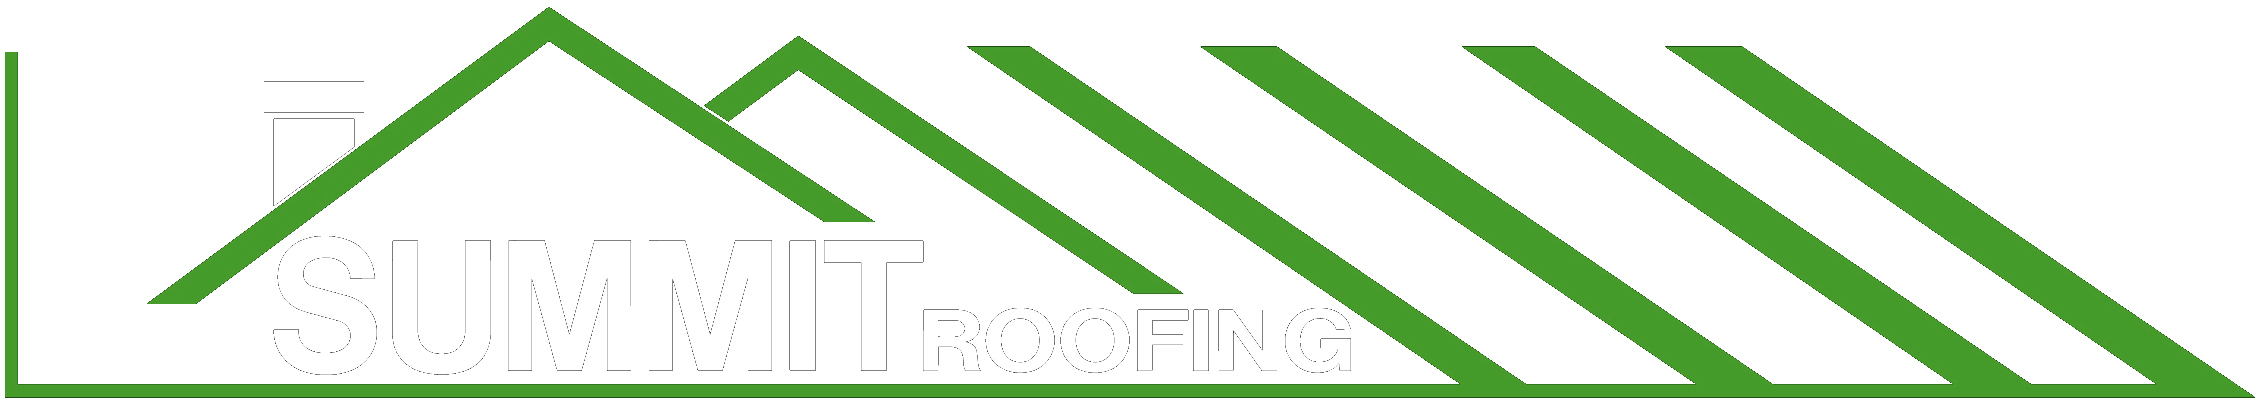 Summit Roofing, Round Rock, TX 78681